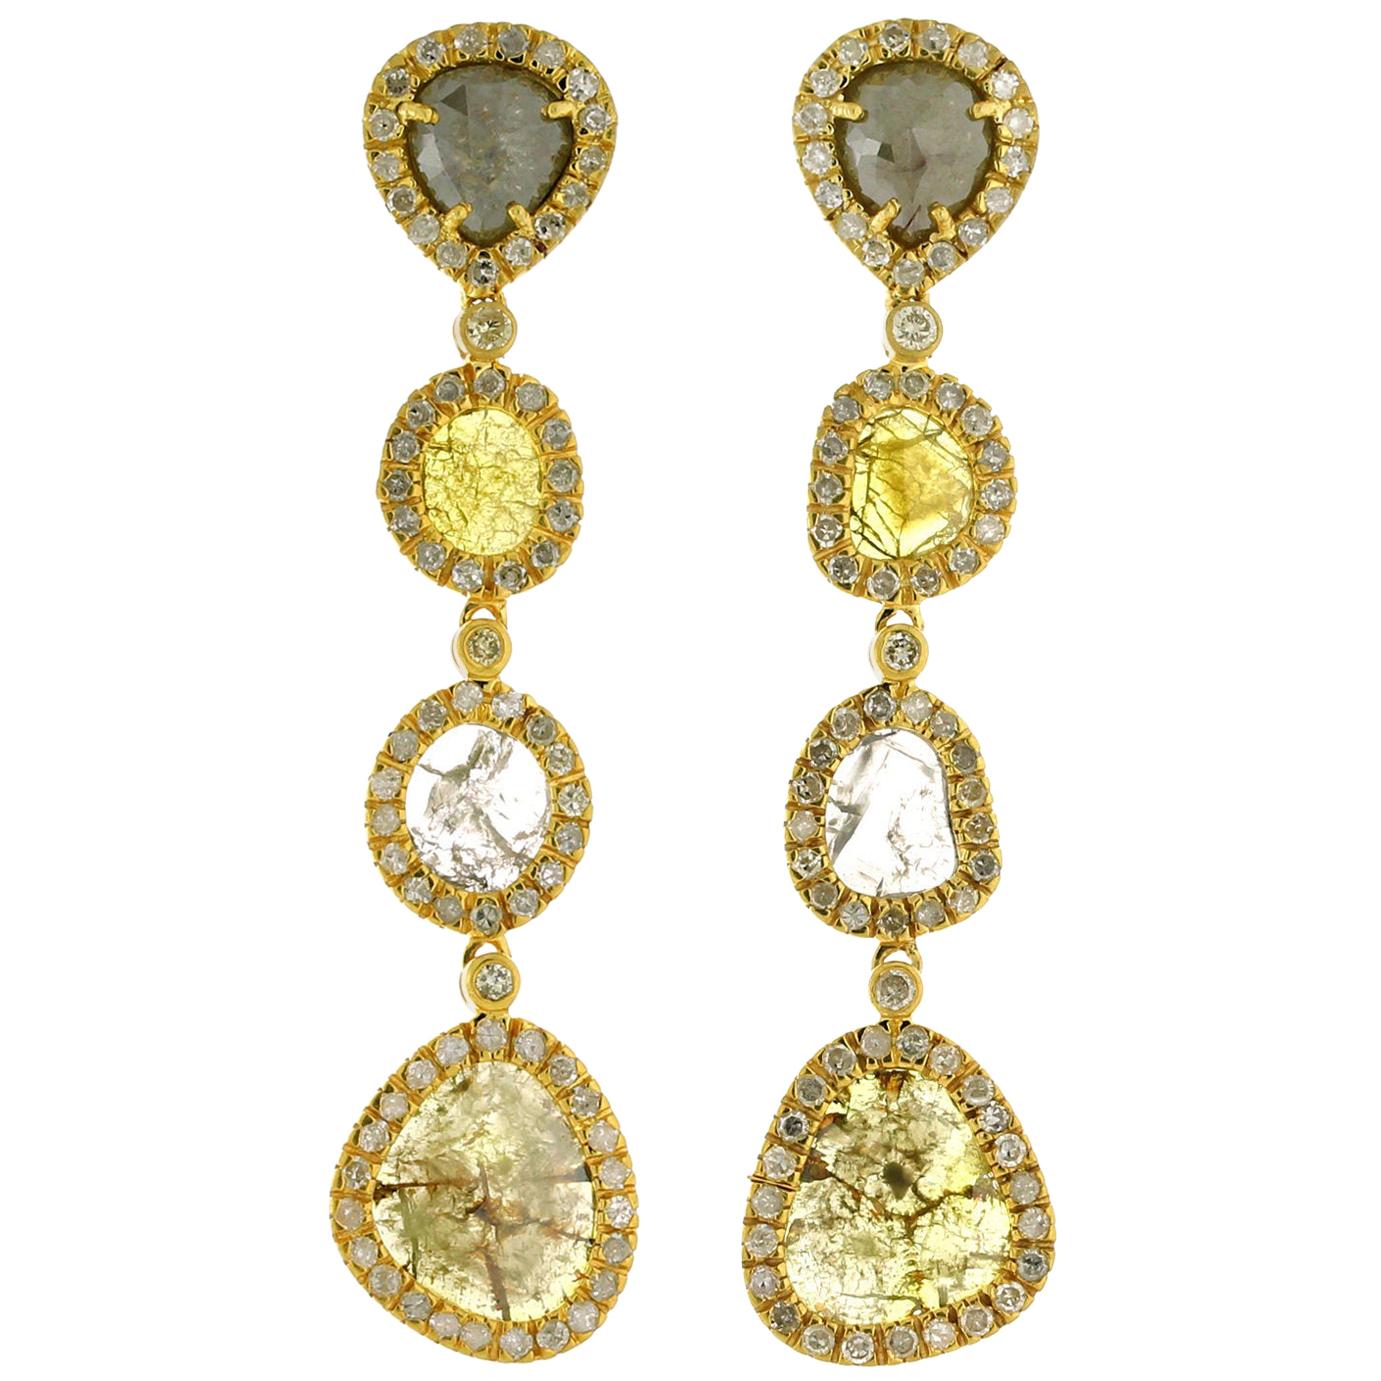 4-Tier Multi Shaped Sliced Diamond Earring in 18k Yellow Gold